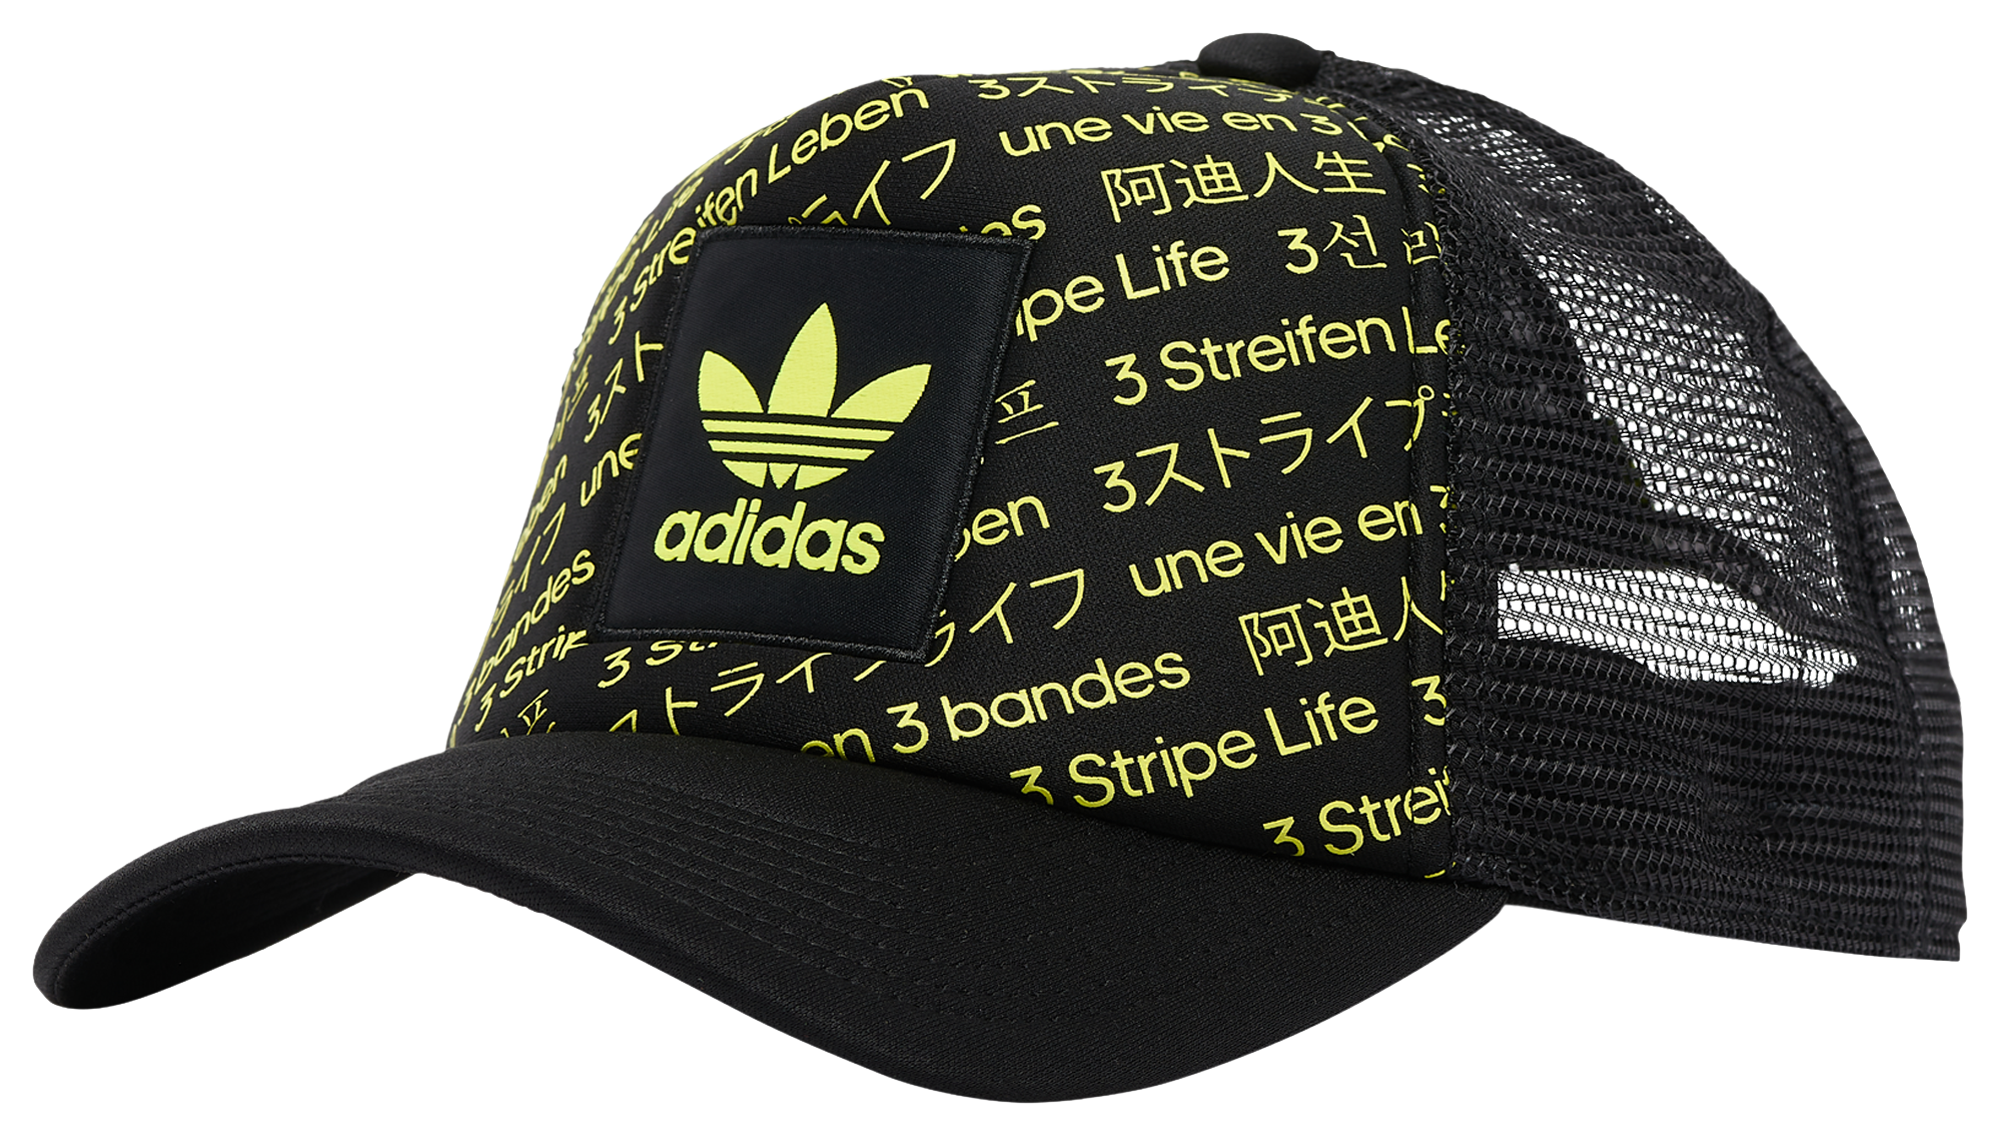 adidas OG Recoded 3 Stripe Life Trucker Hat - Men's